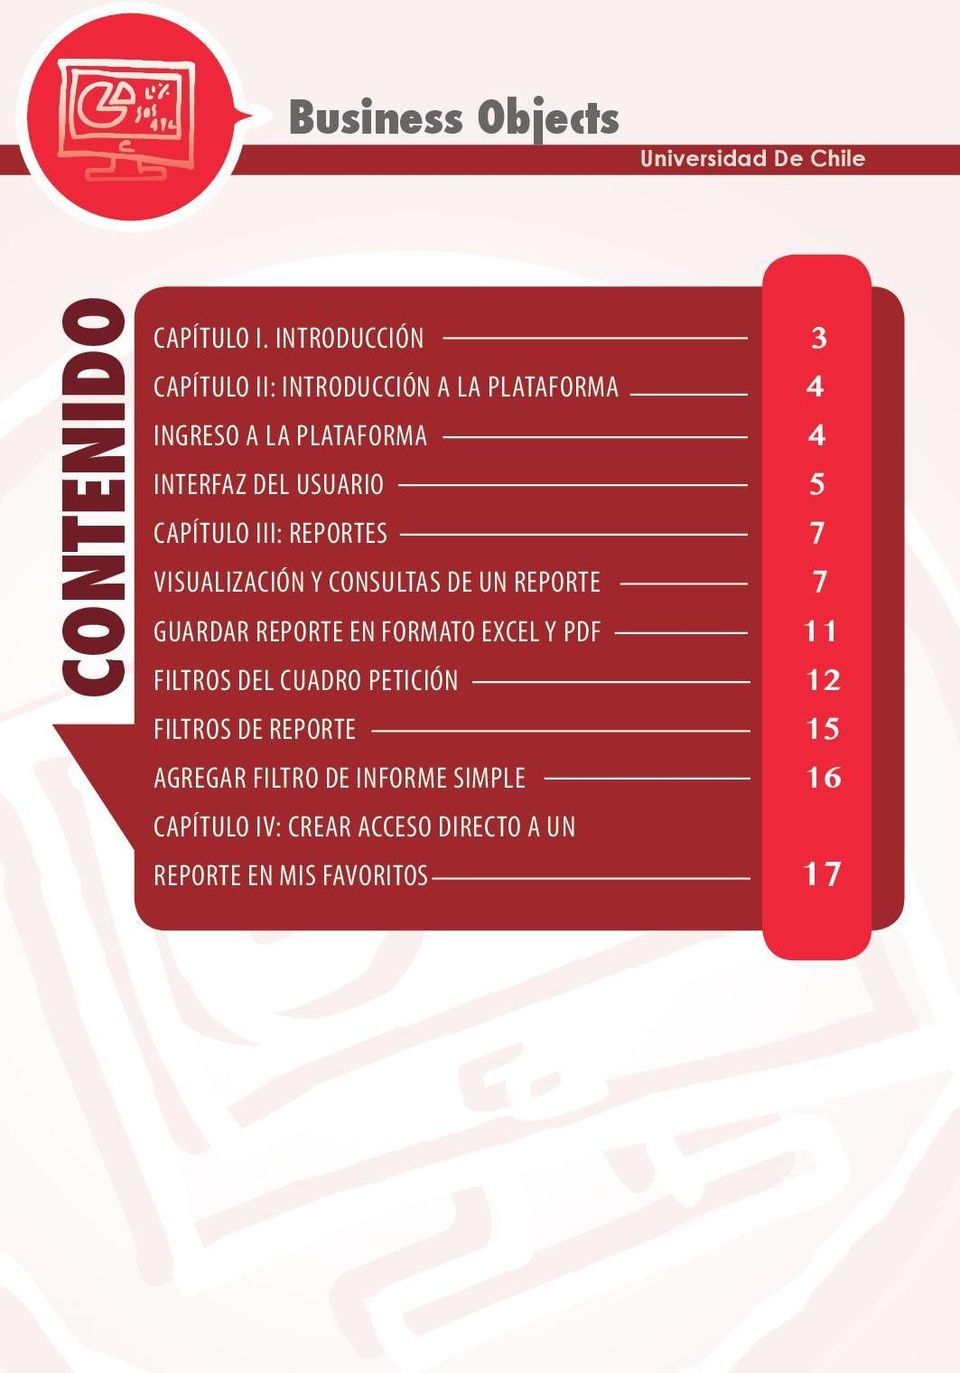 USUARIO 5 CAPÍTULO III: REPORTES 7 VISUALIZACIÓN Y CONSULTAS DE UN REPORTE 7 GUARDAR REPORTE EN